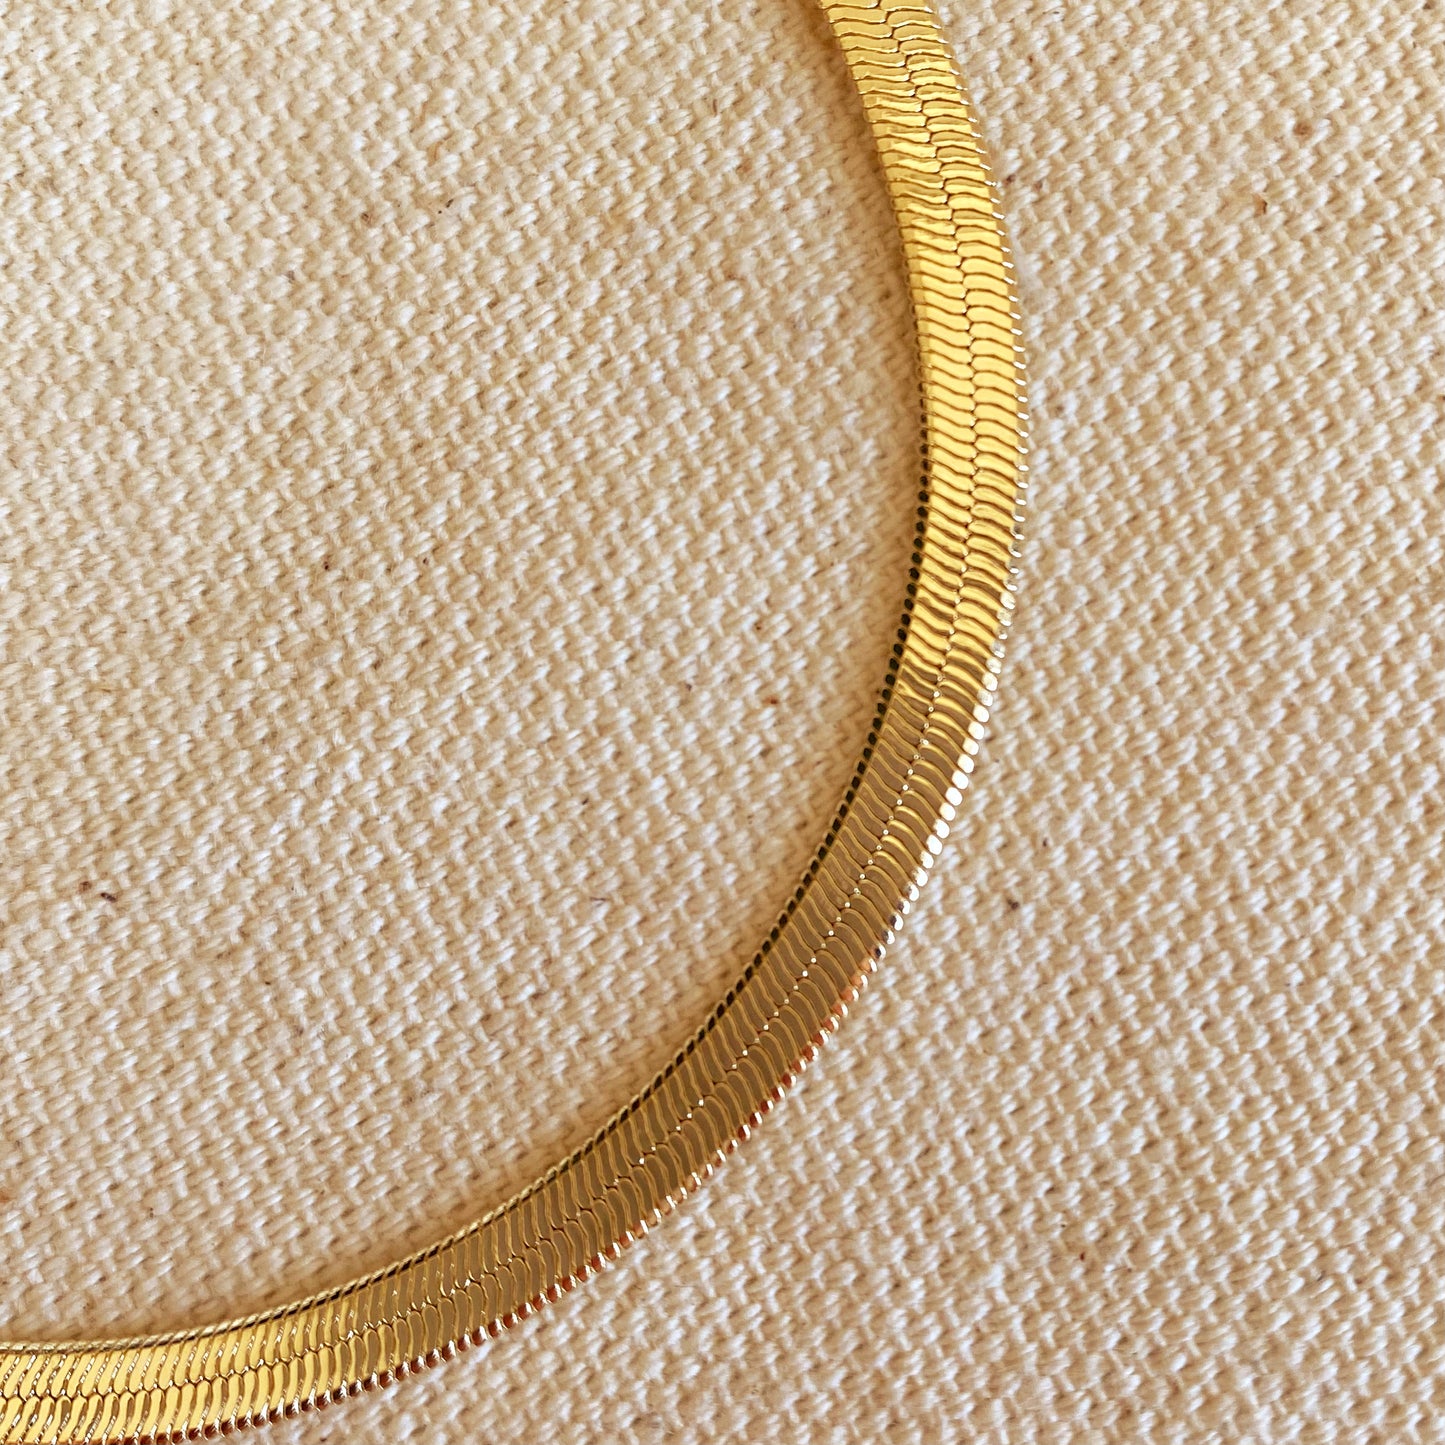 GoldFi 18k Gold Filled 4mm Herringbone Bracelet